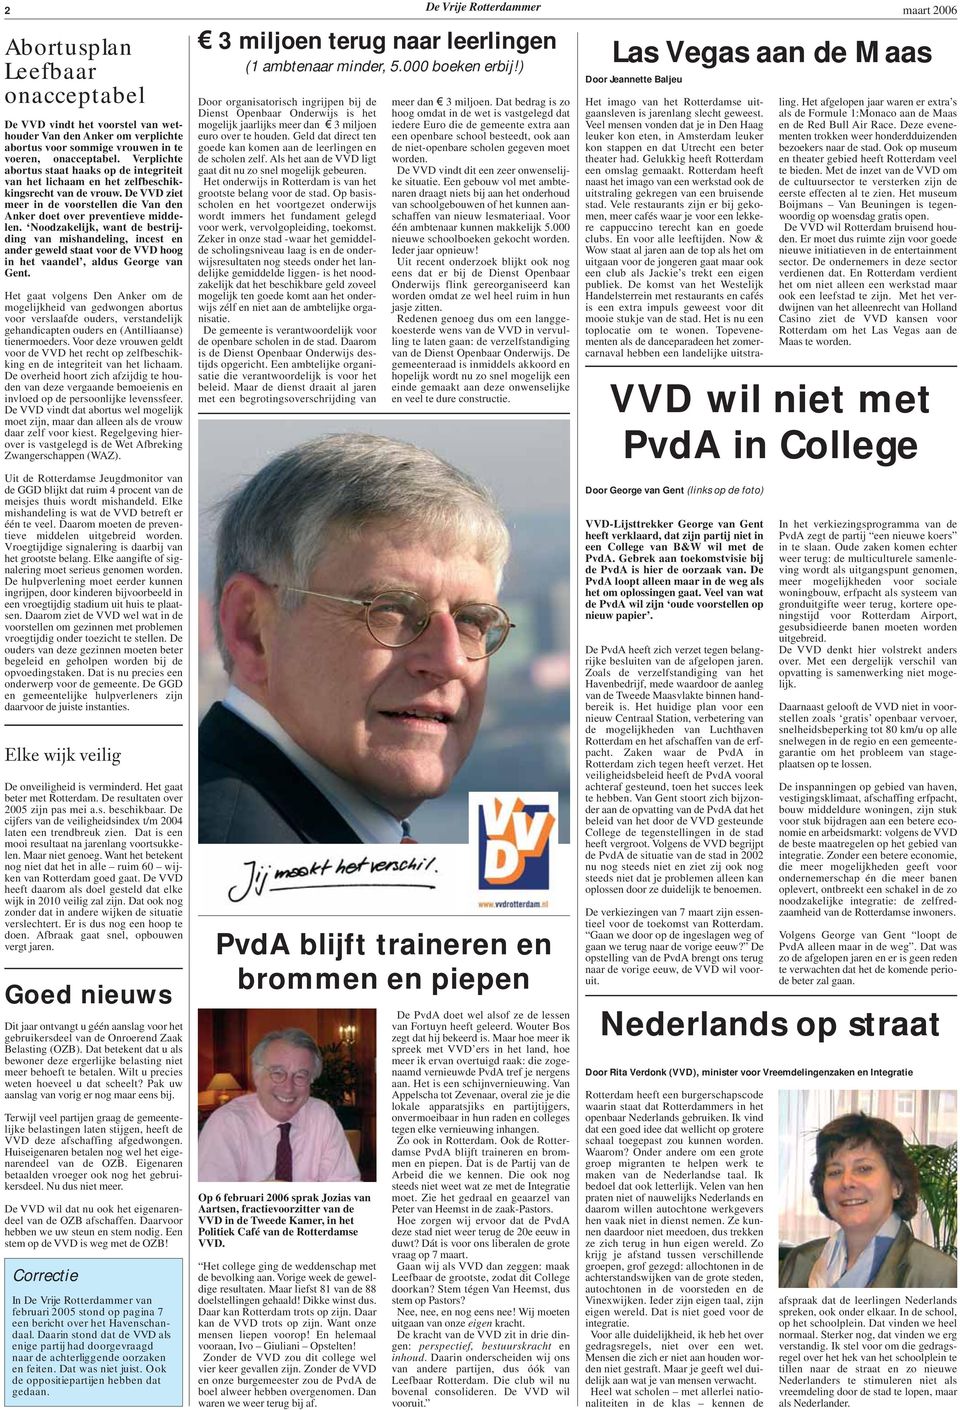 Noodzakelijk, want de bestrijding van mishandeling, incest en ander geweld staat voor de VVD hoog in het vaandel, aldus George van Gent.